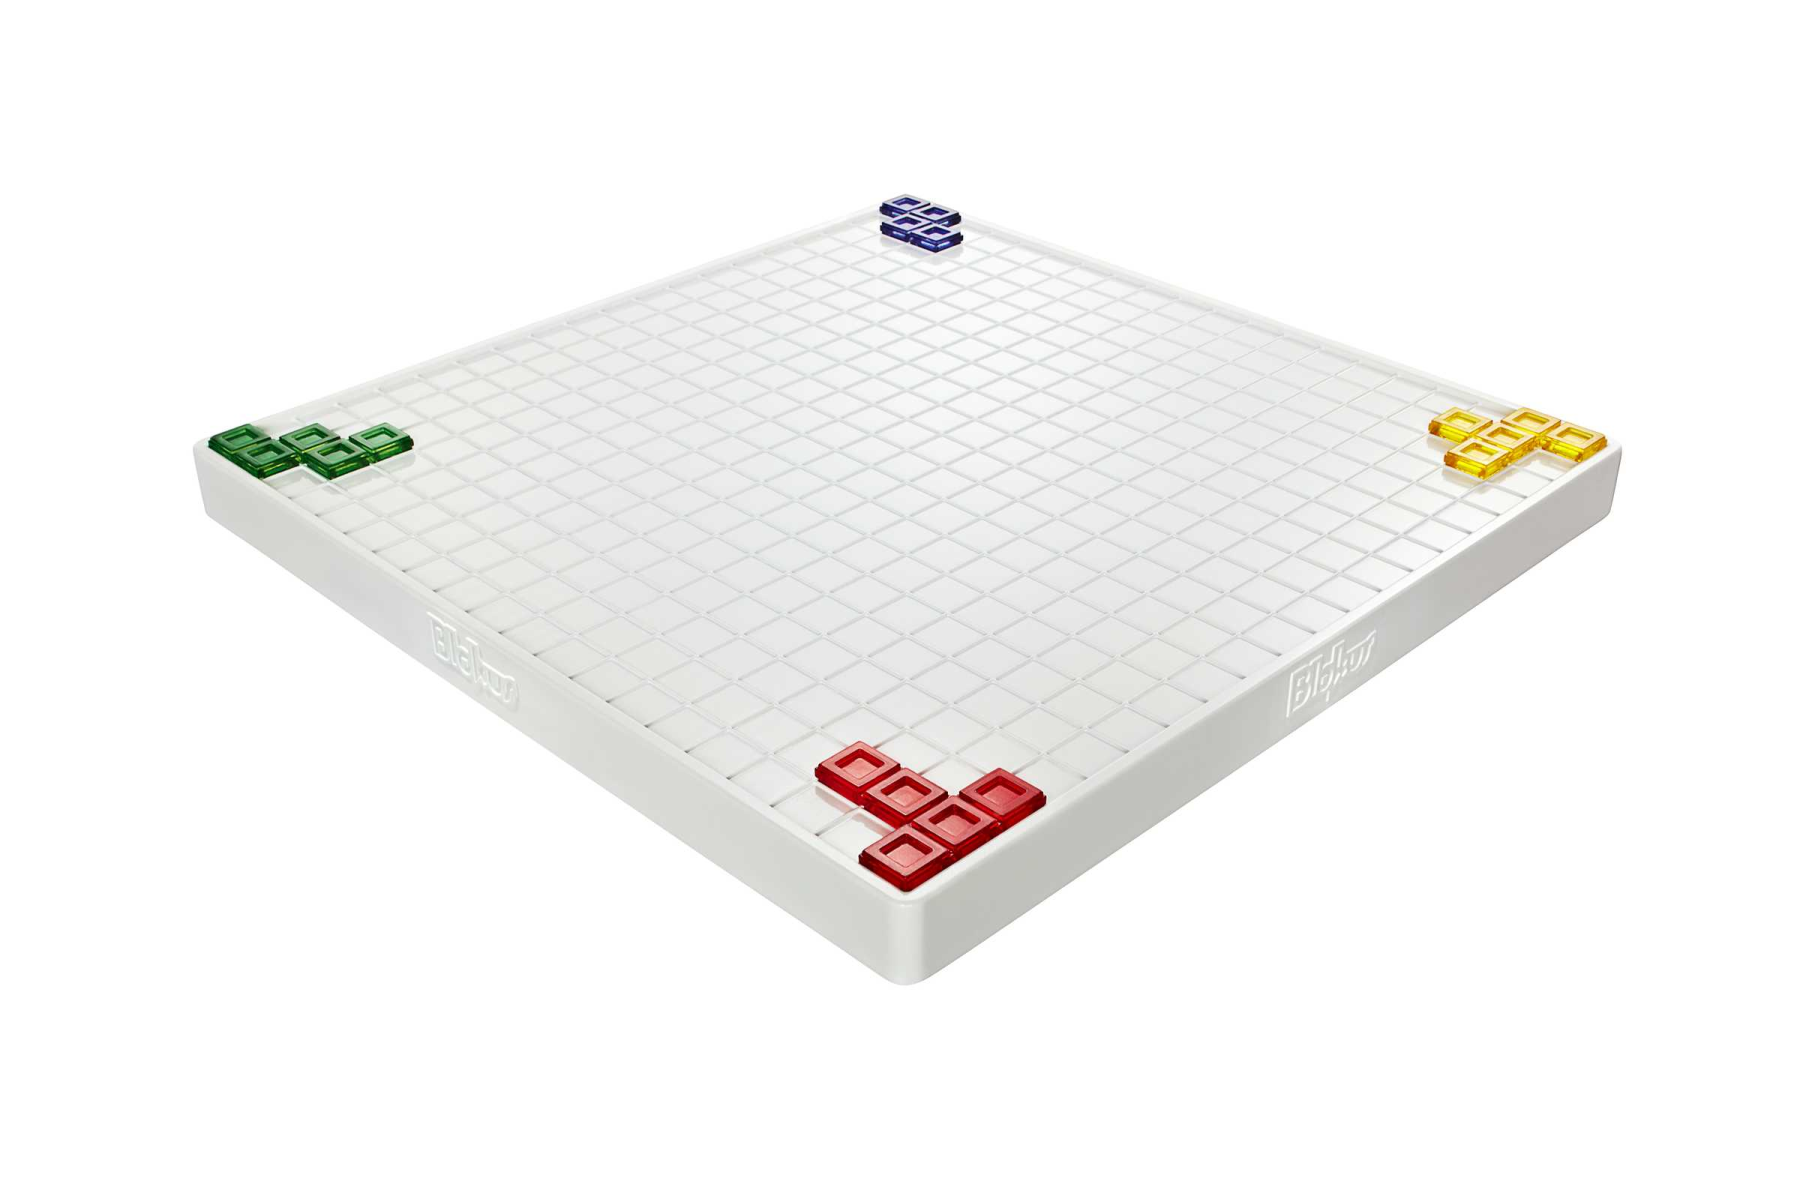 Blokus, gioco da tavolo, difendete il vostro territorio con blokus, conquisterà tutta la famiglia, giocattolo per bambini 7+ anni - MATTEL GAMES